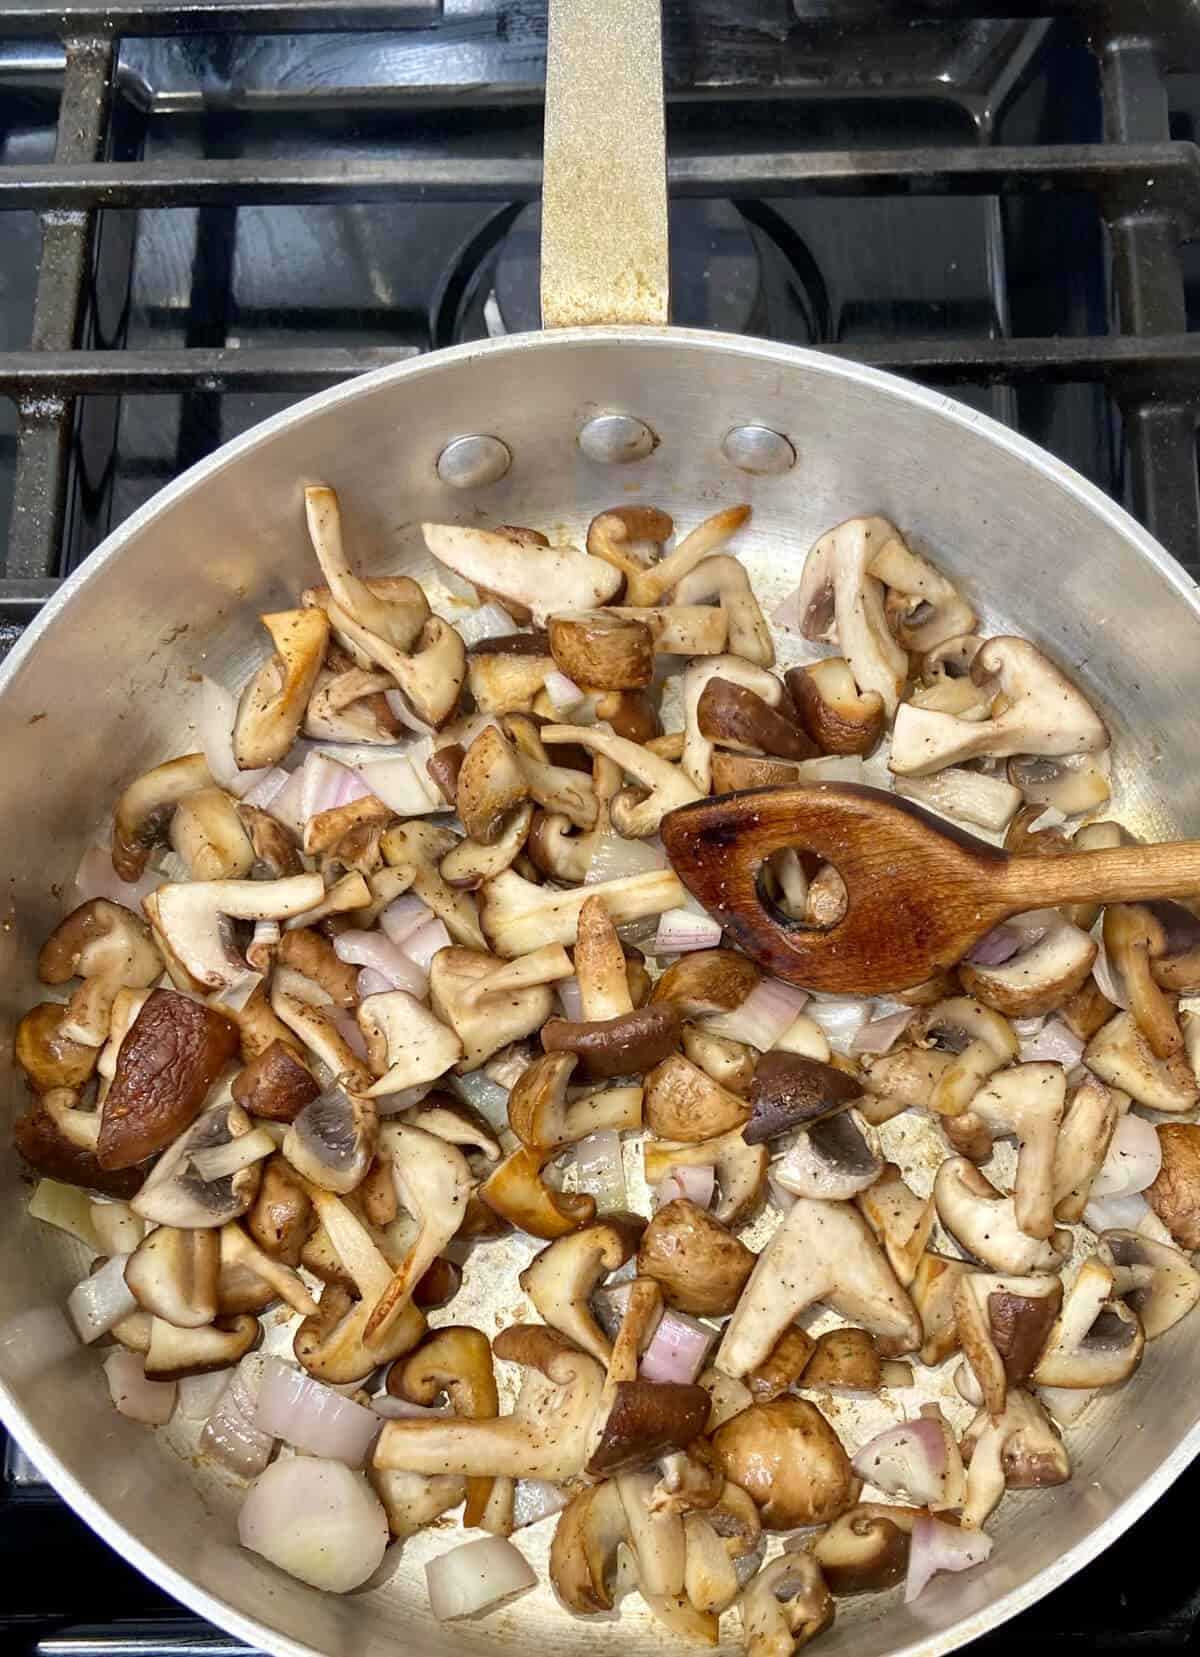 Sauteing mushrooms and shallots.